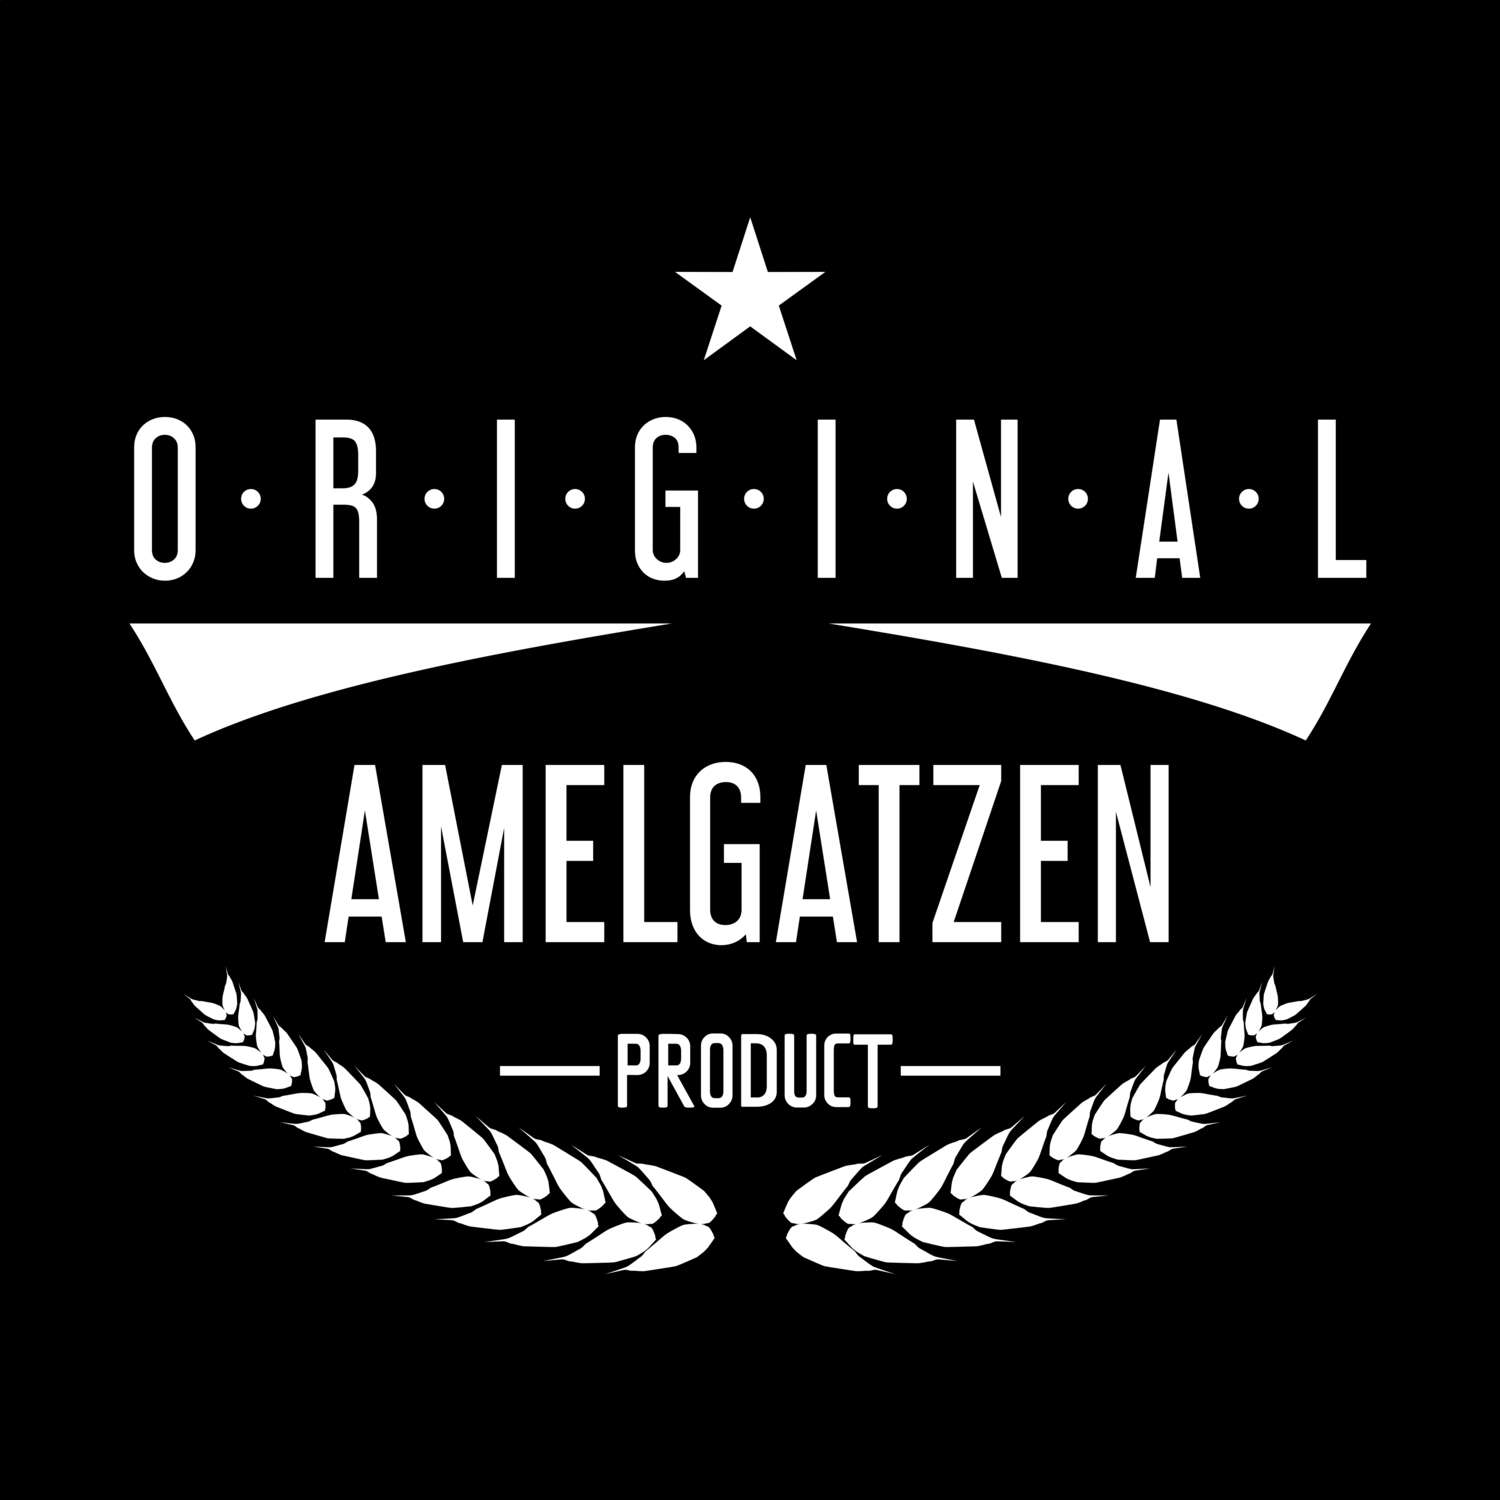 Amelgatzen T-Shirt »Original Product«